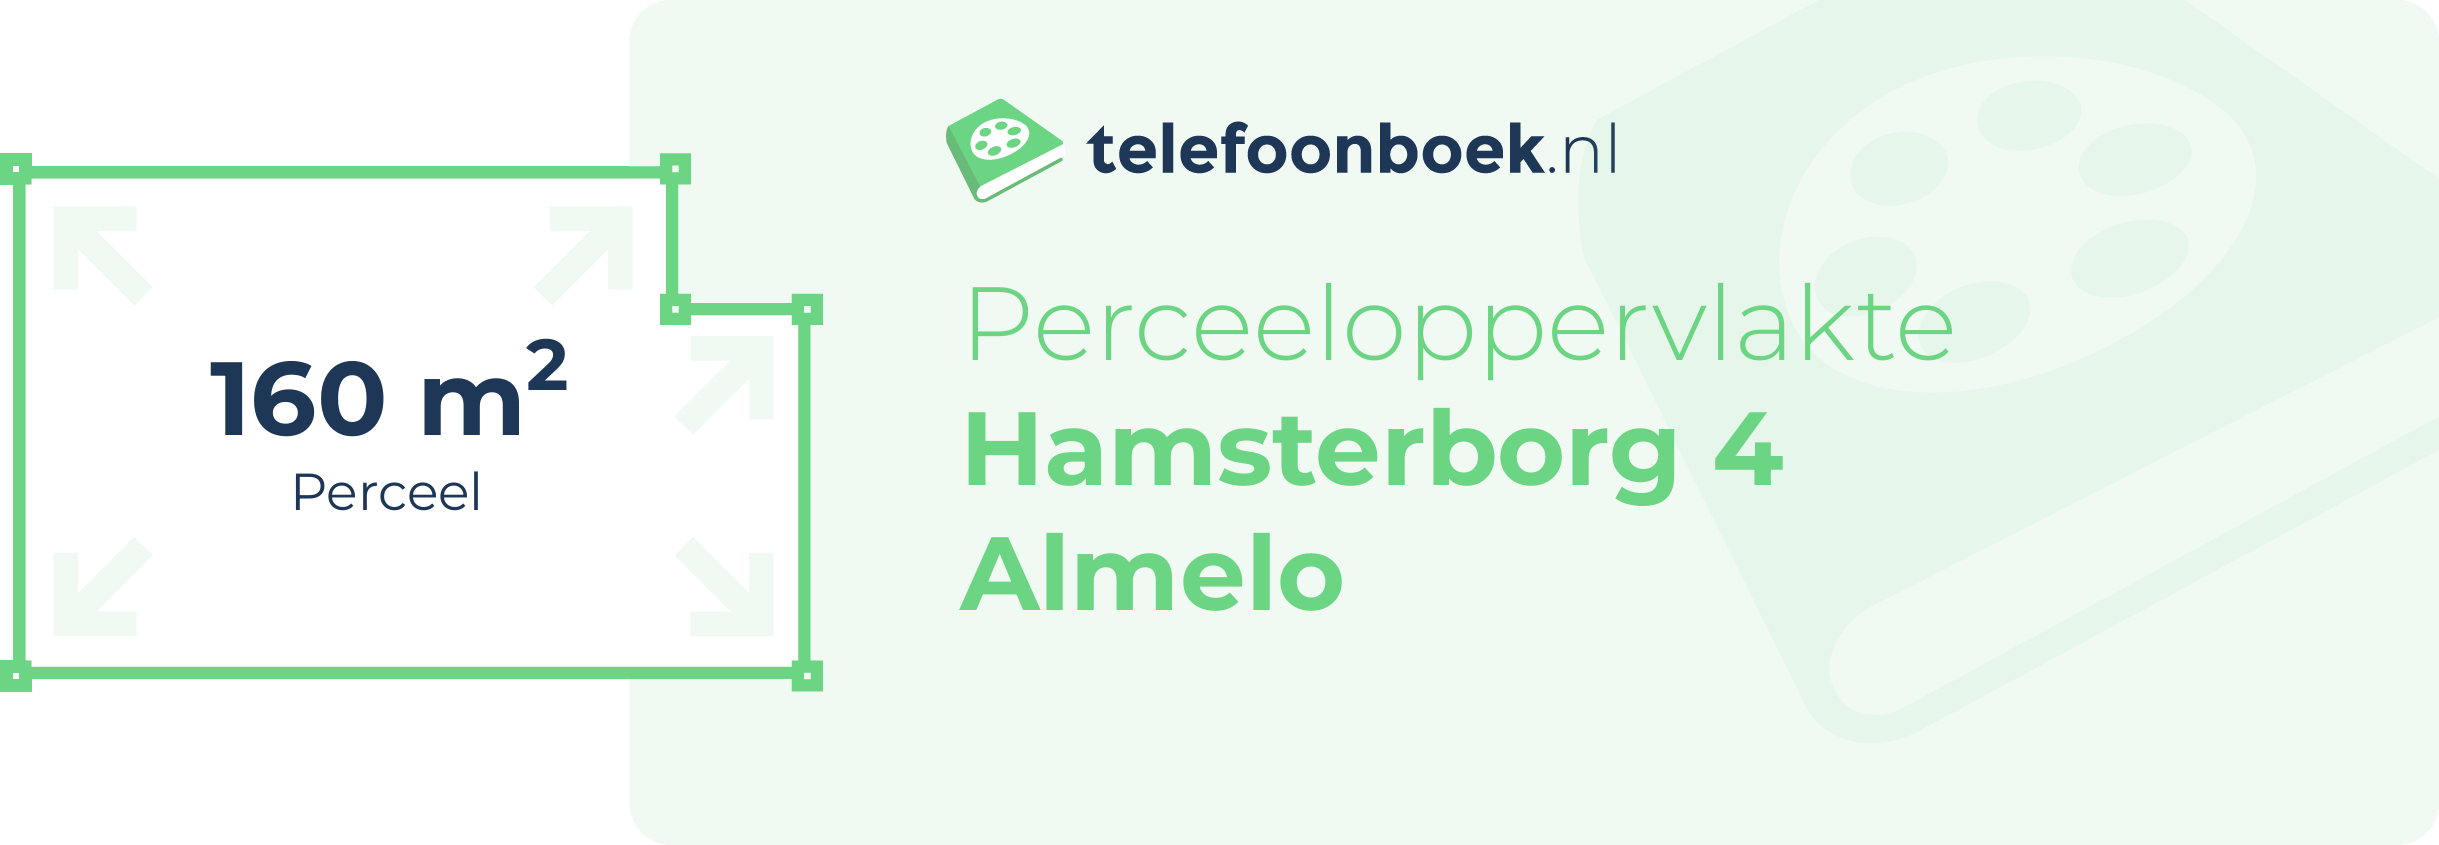 Perceeloppervlakte Hamsterborg 4 Almelo